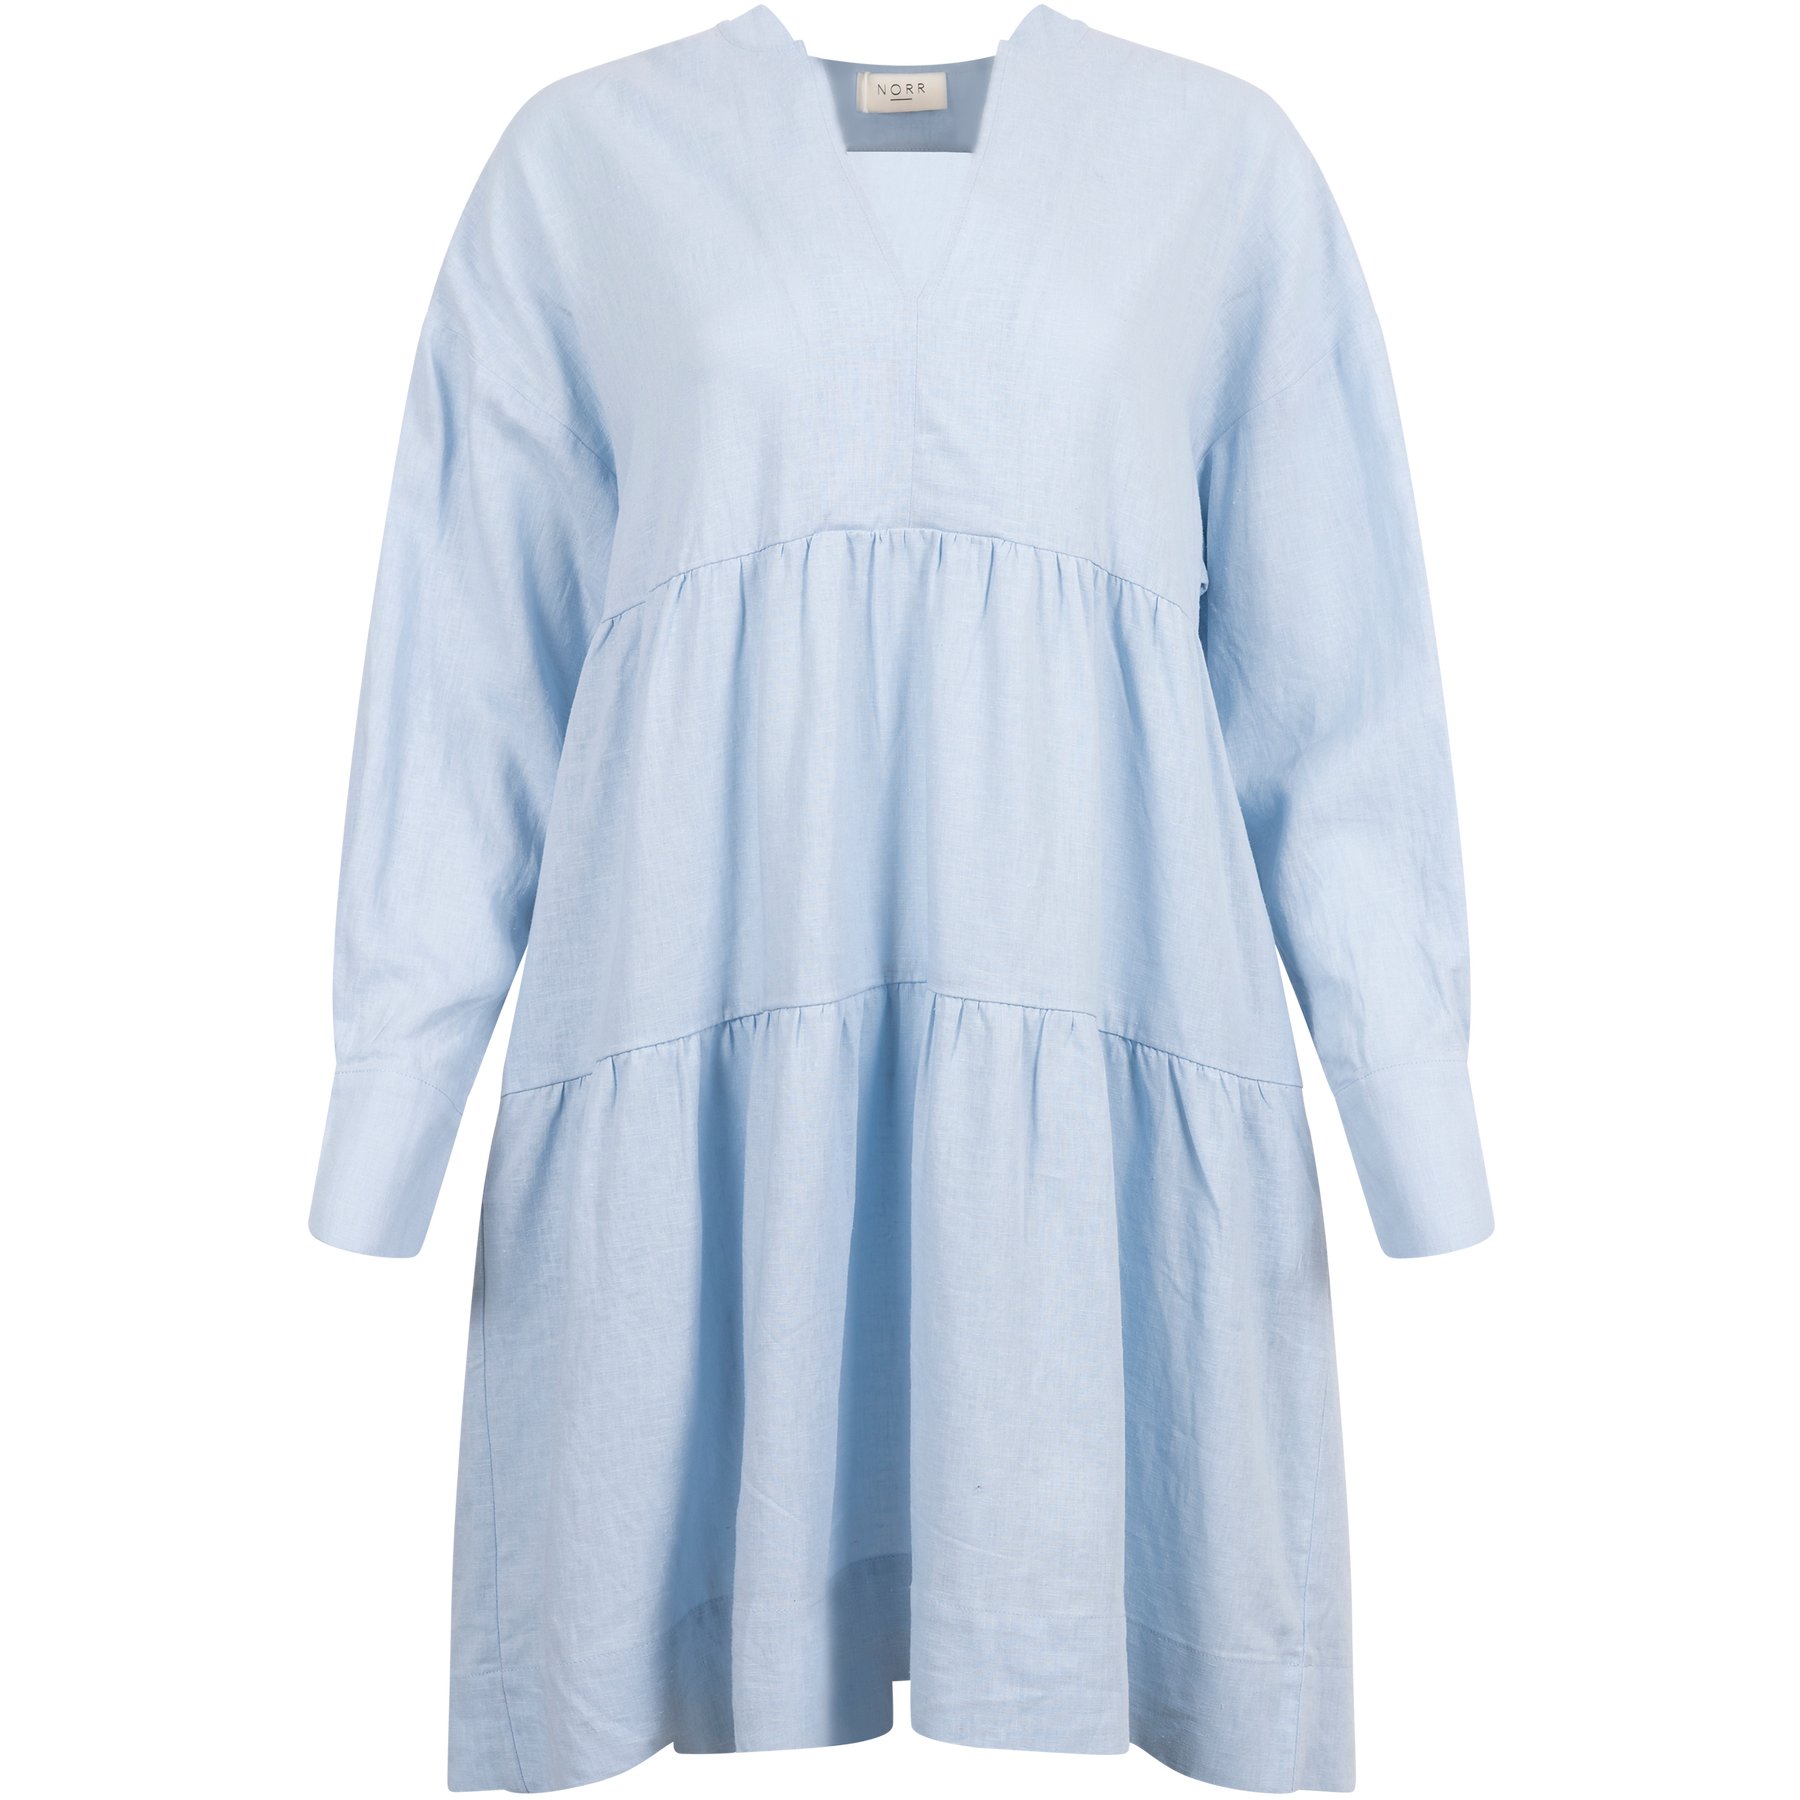 Esma Bomba Short Dress - Light Blue